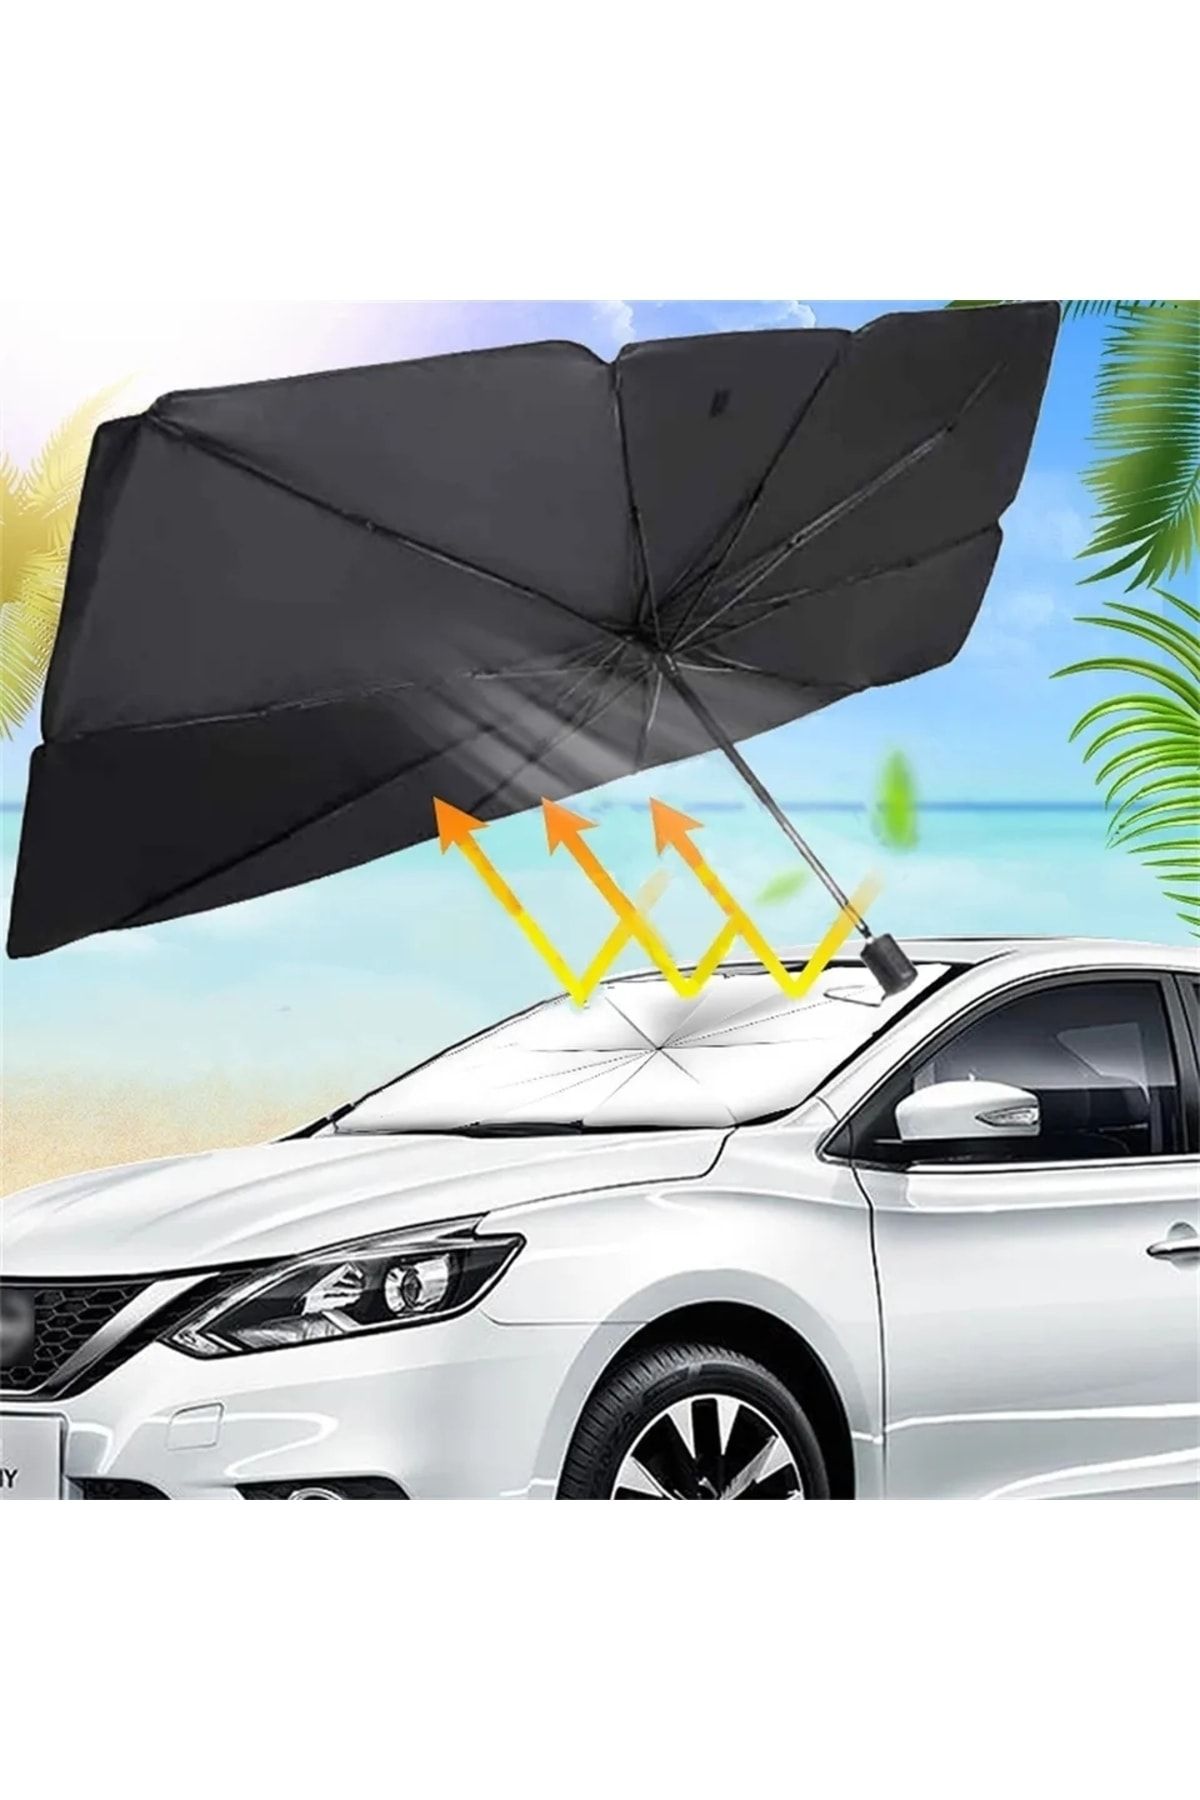 AVİPOLES Araç şemsiyesi Otamatik güneşlik ön cam kapatan araç şemsiyesi